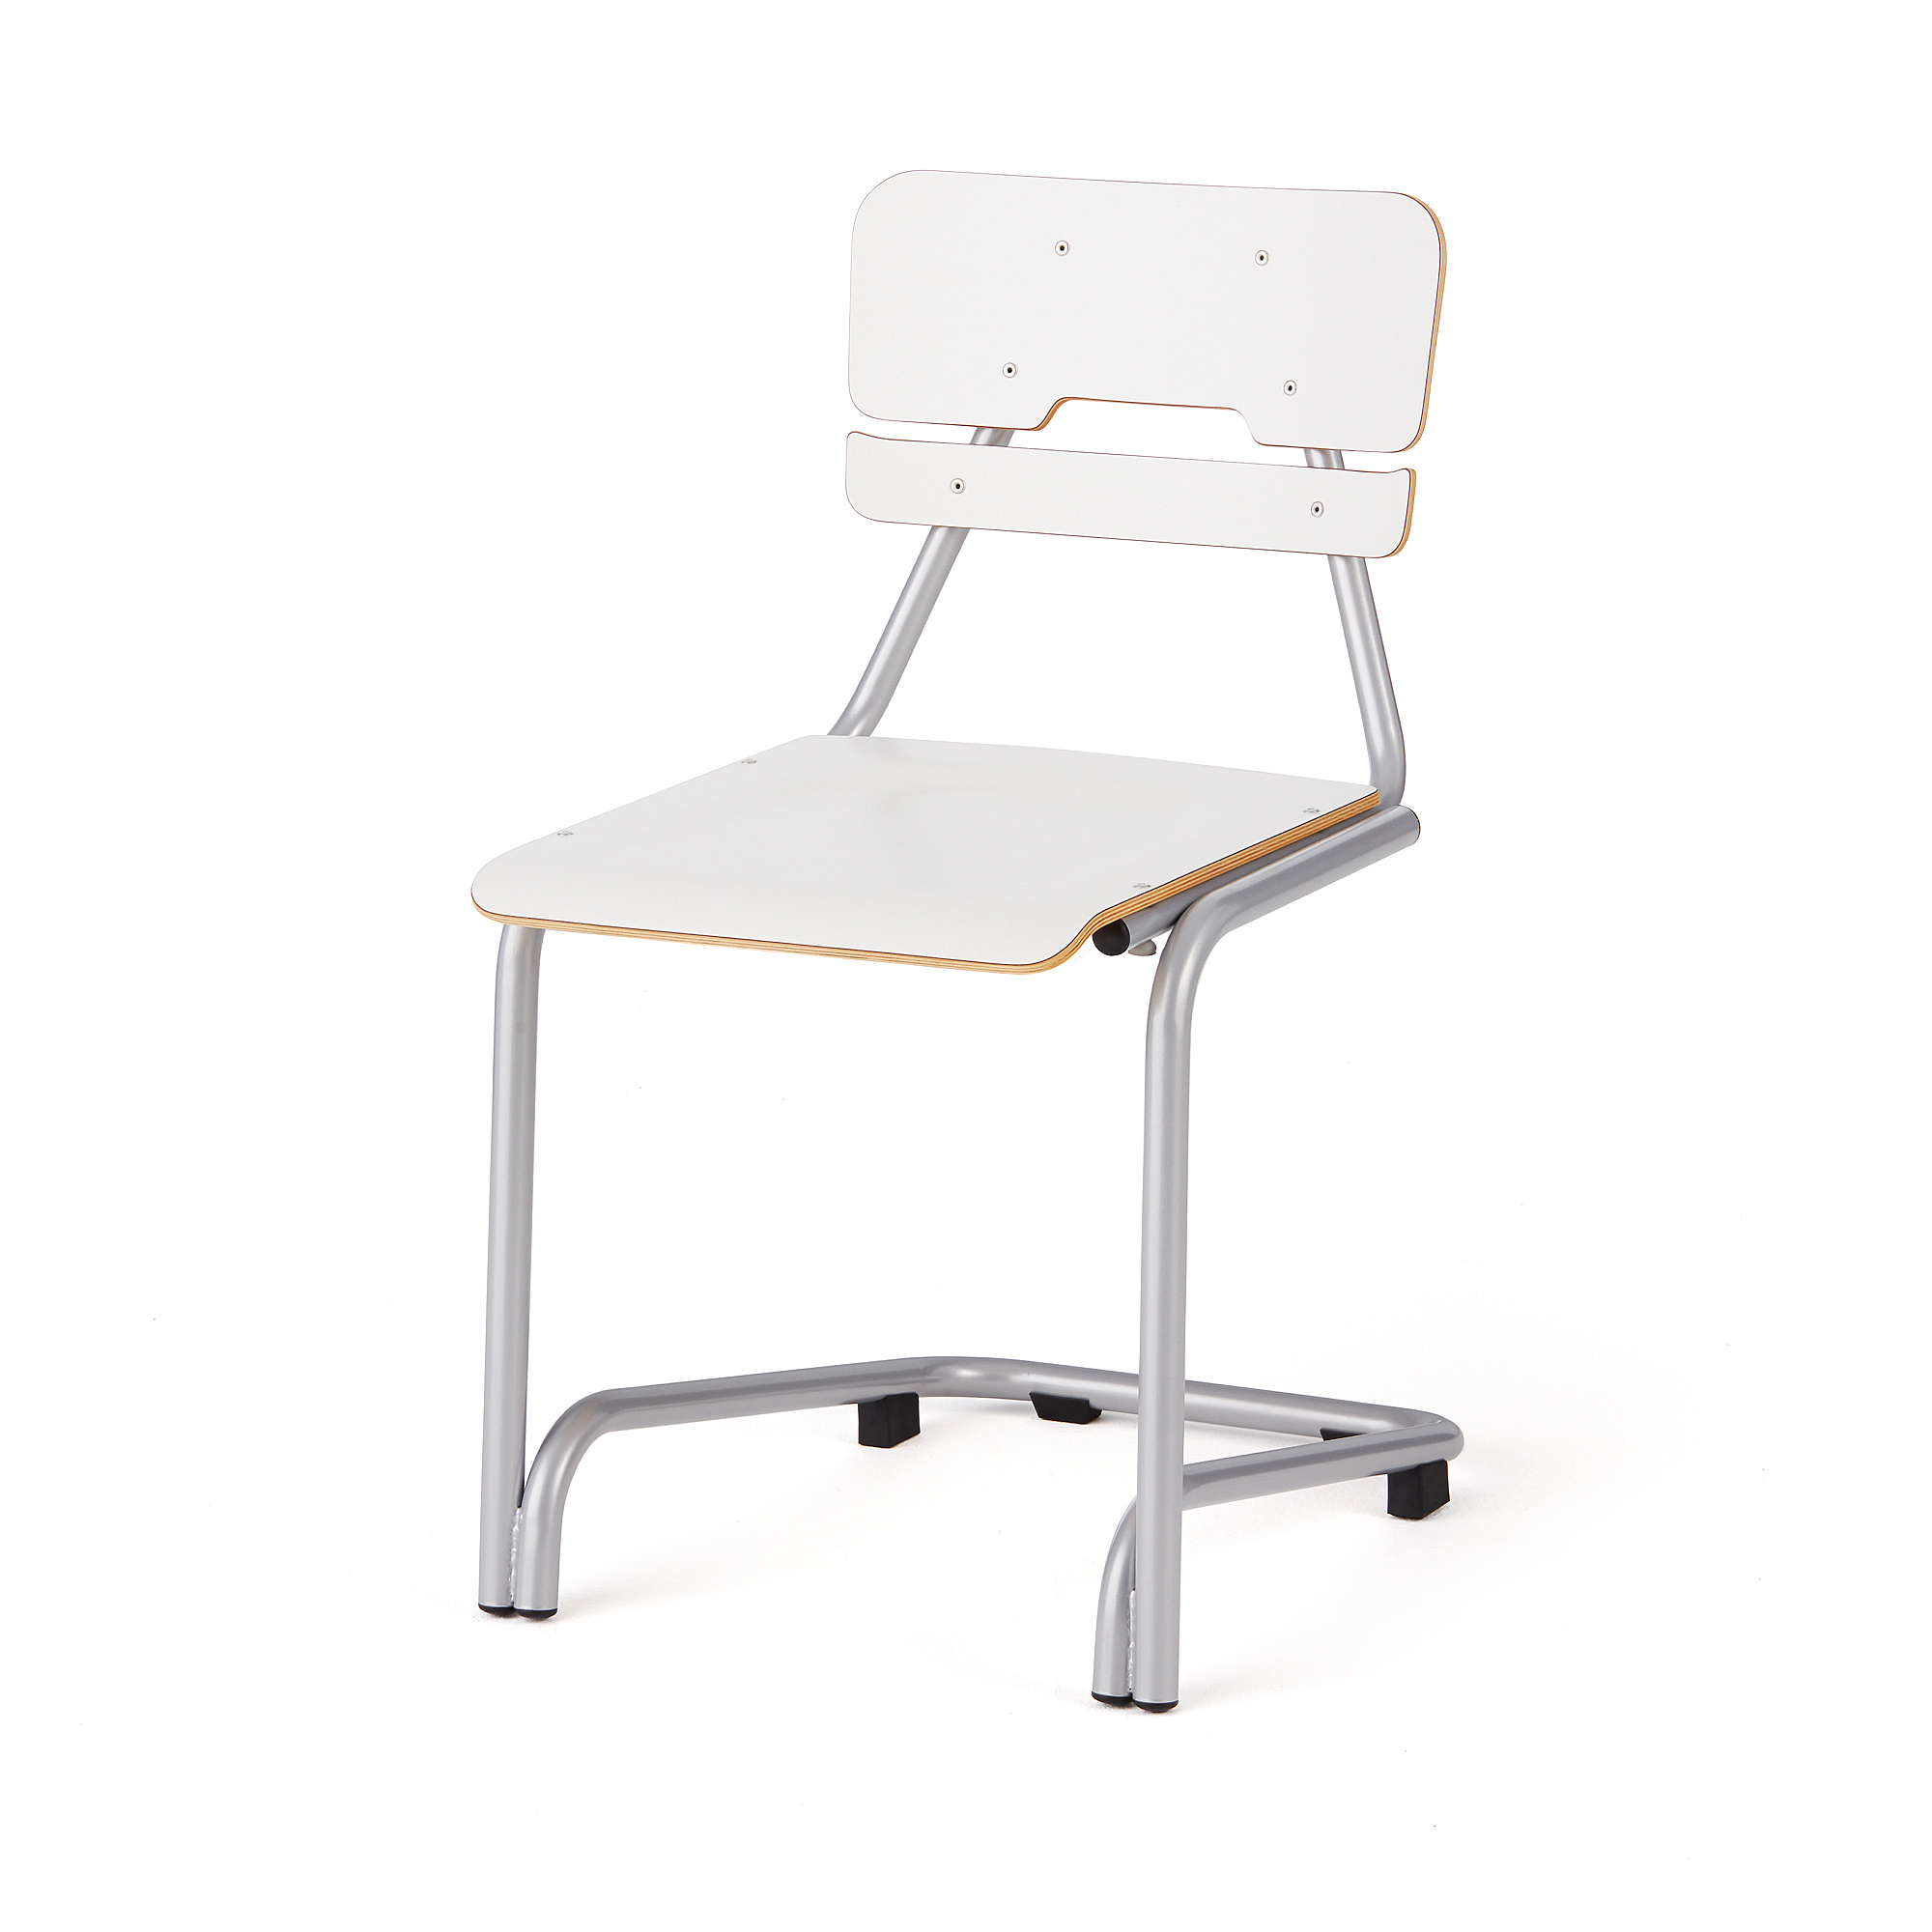 Školní židle DOCTRINA, výška 450 mm, bílá